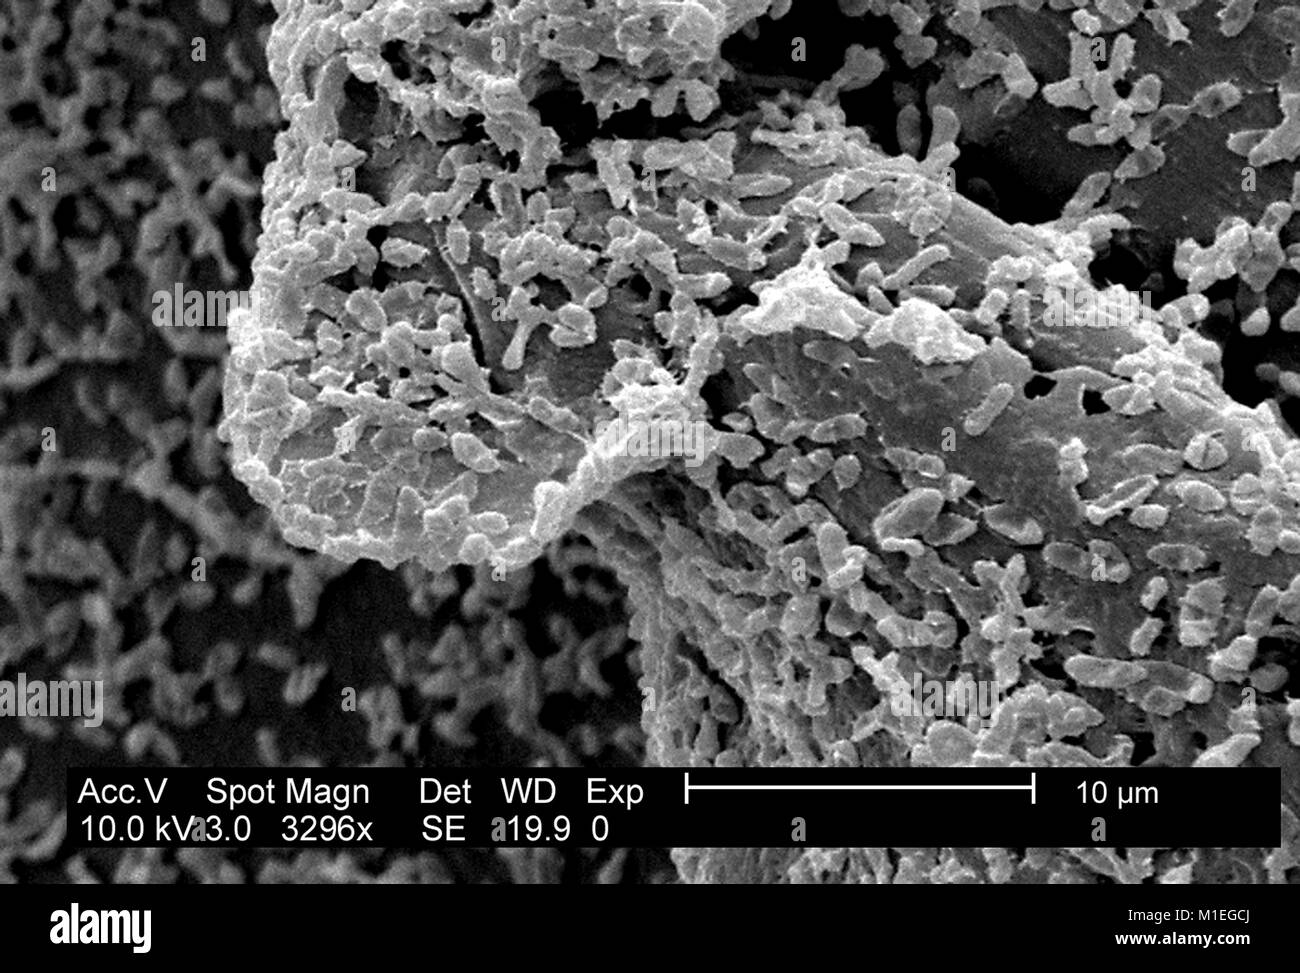 Micrografia SEM di P.mirabilis (ATCC 29906) biofilm, una colonia batterica cresciuto su un PC (policarbonato) superficie usando un CDC biofilm reattore, 2003. Immagine cortesia CDC/CDC, Laboratorio di biofilm, DHQP, Chelsea Samaniego Meltzer. () Foto Stock